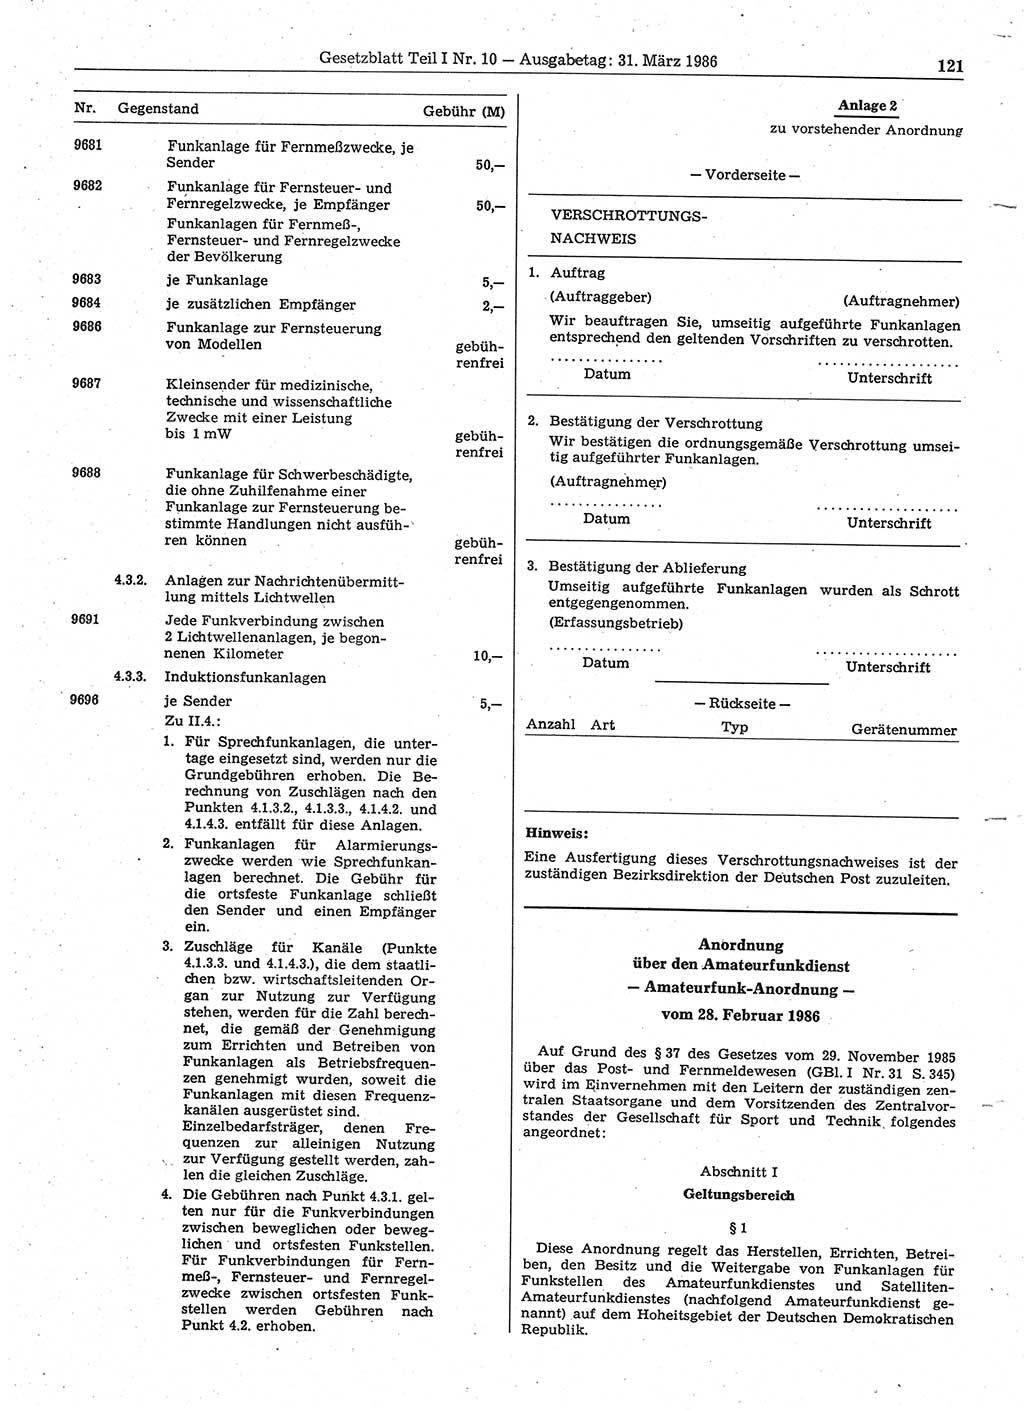 Gesetzblatt (GBl.) der Deutschen Demokratischen Republik (DDR) Teil Ⅰ 1986, Seite 121 (GBl. DDR Ⅰ 1986, S. 121)